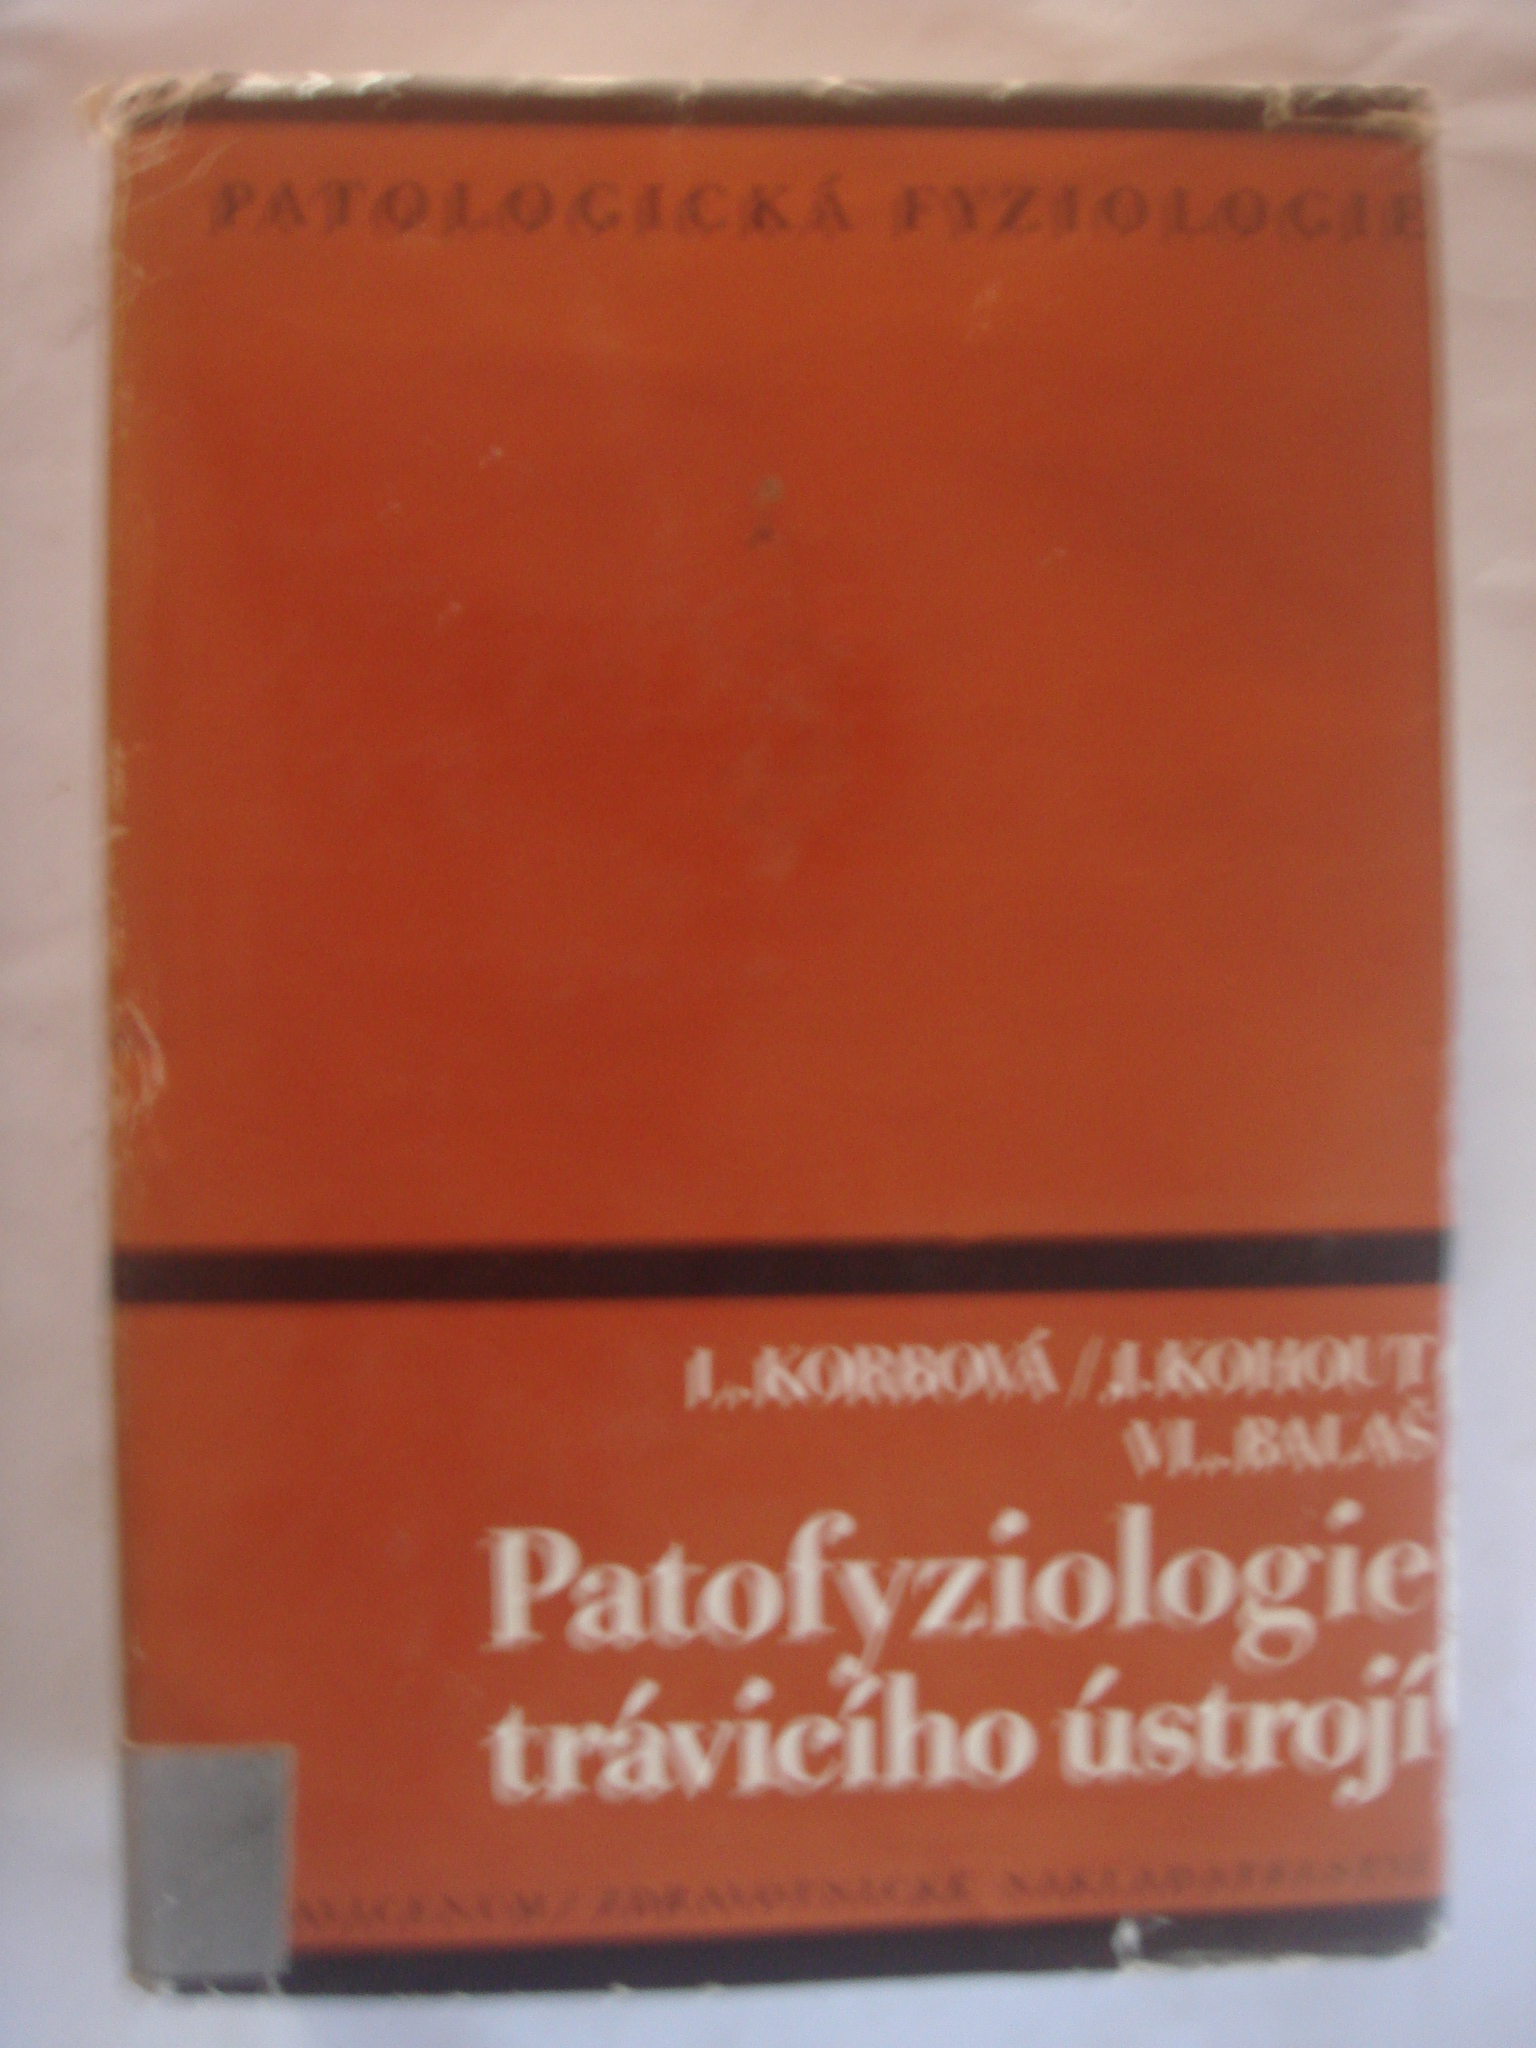 zobrazit detail knihy Korbov, Libue; Kohout, Ji; Bala, Vladimr: Pa